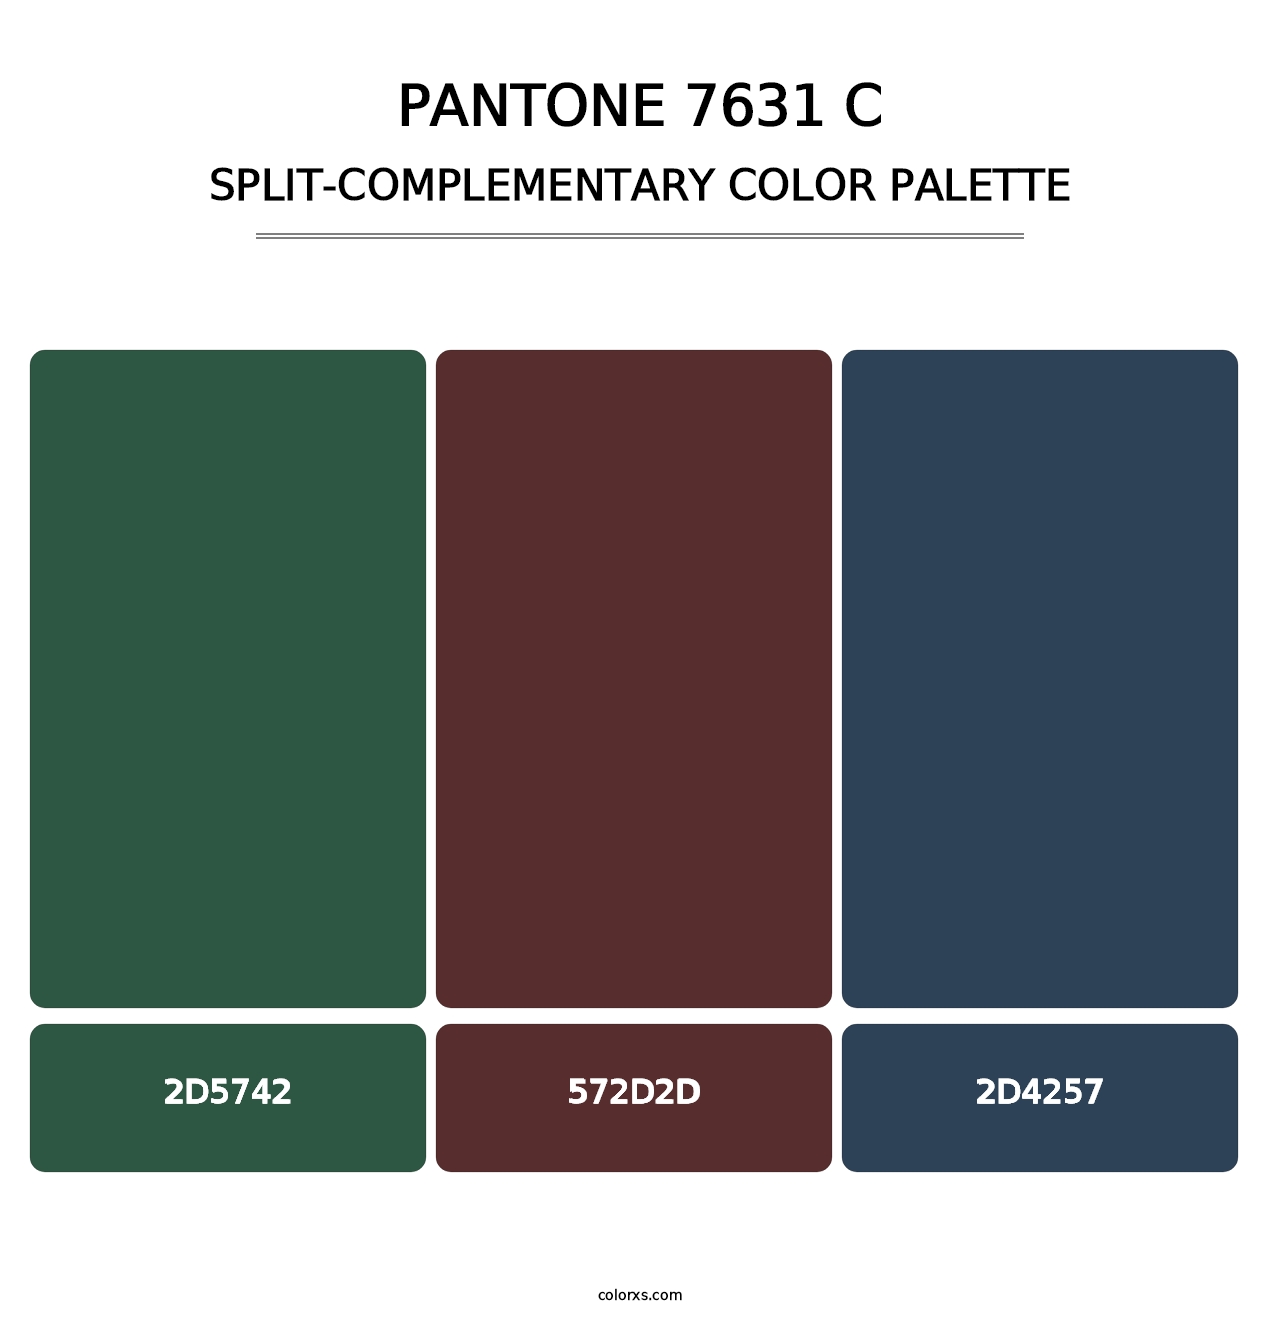 PANTONE 7631 C - Split-Complementary Color Palette